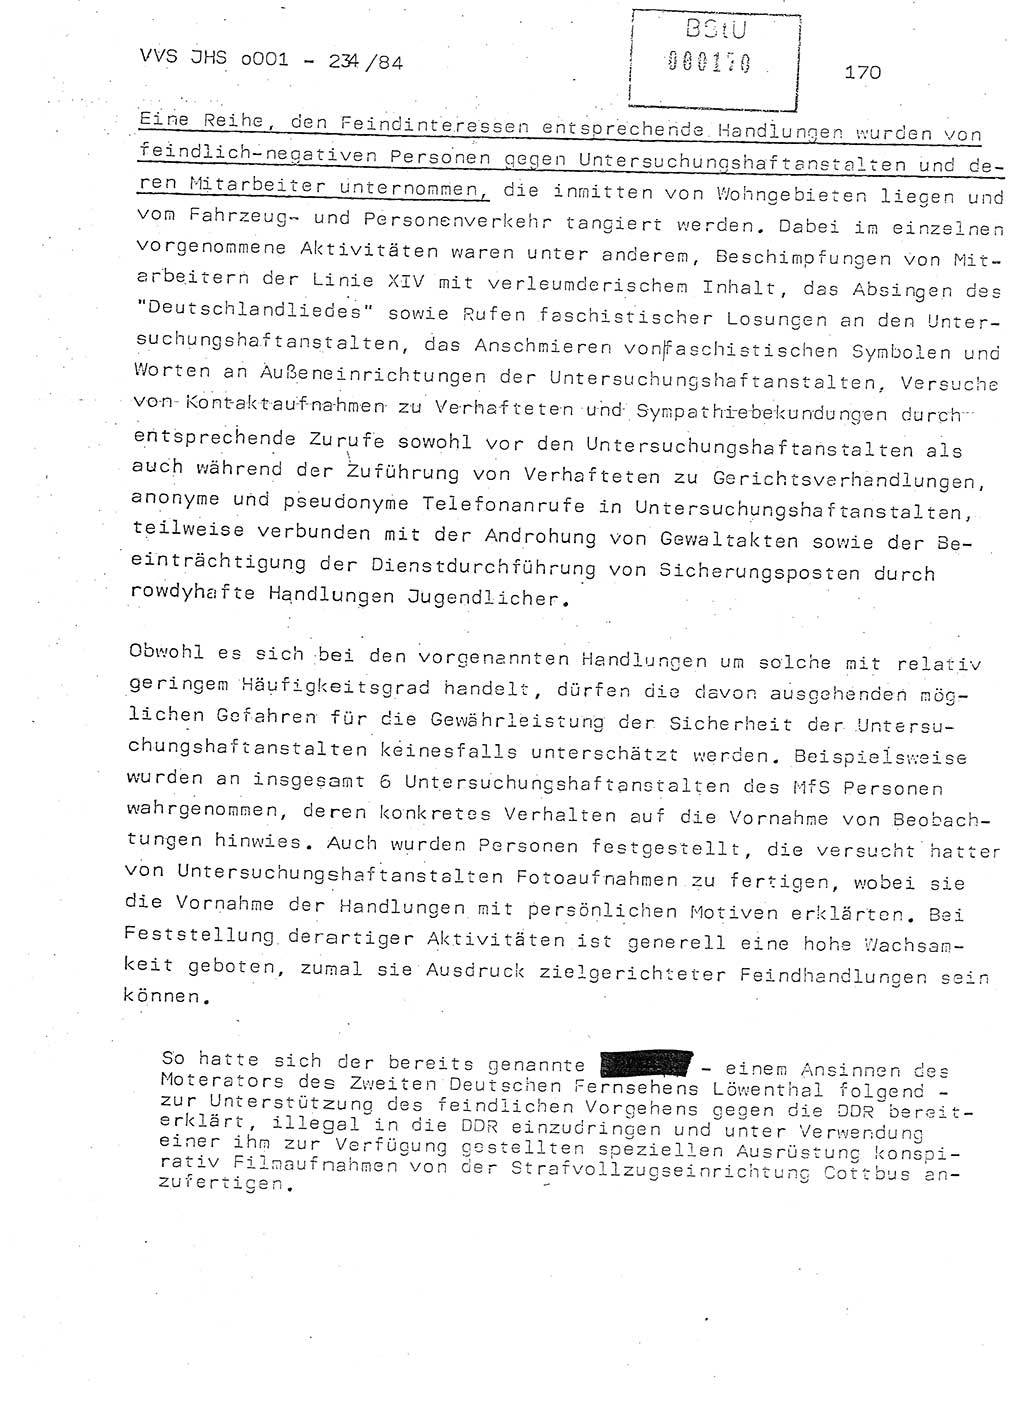 Dissertation Oberst Siegfried Rataizick (Abt. ⅩⅣ), Oberstleutnant Volkmar Heinz (Abt. ⅩⅣ), Oberstleutnant Werner Stein (HA Ⅸ), Hauptmann Heinz Conrad (JHS), Ministerium für Staatssicherheit (MfS) [Deutsche Demokratische Republik (DDR)], Juristische Hochschule (JHS), Vertrauliche Verschlußsache (VVS) o001-234/84, Potsdam 1984, Seite 170 (Diss. MfS DDR JHS VVS o001-234/84 1984, S. 170)